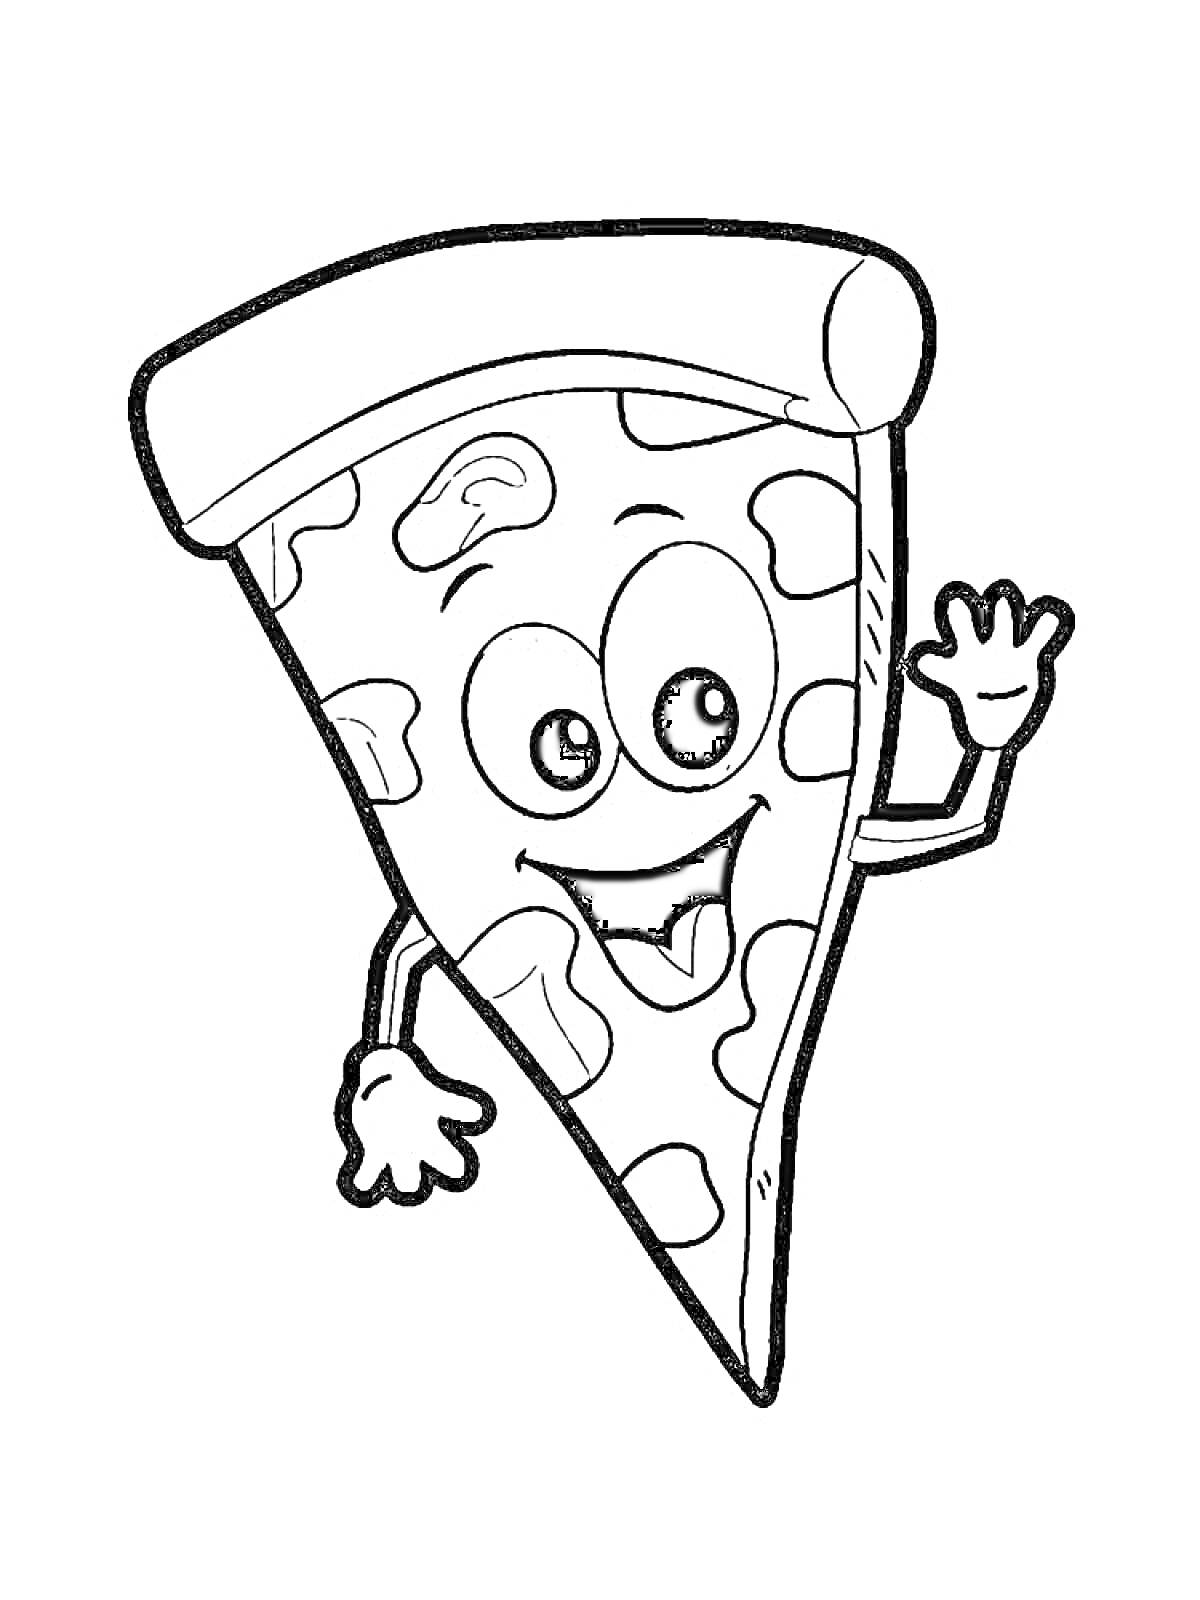 Раскраска Пицца с лицом, руками и ногами, улыбающаяся и машущая рукой